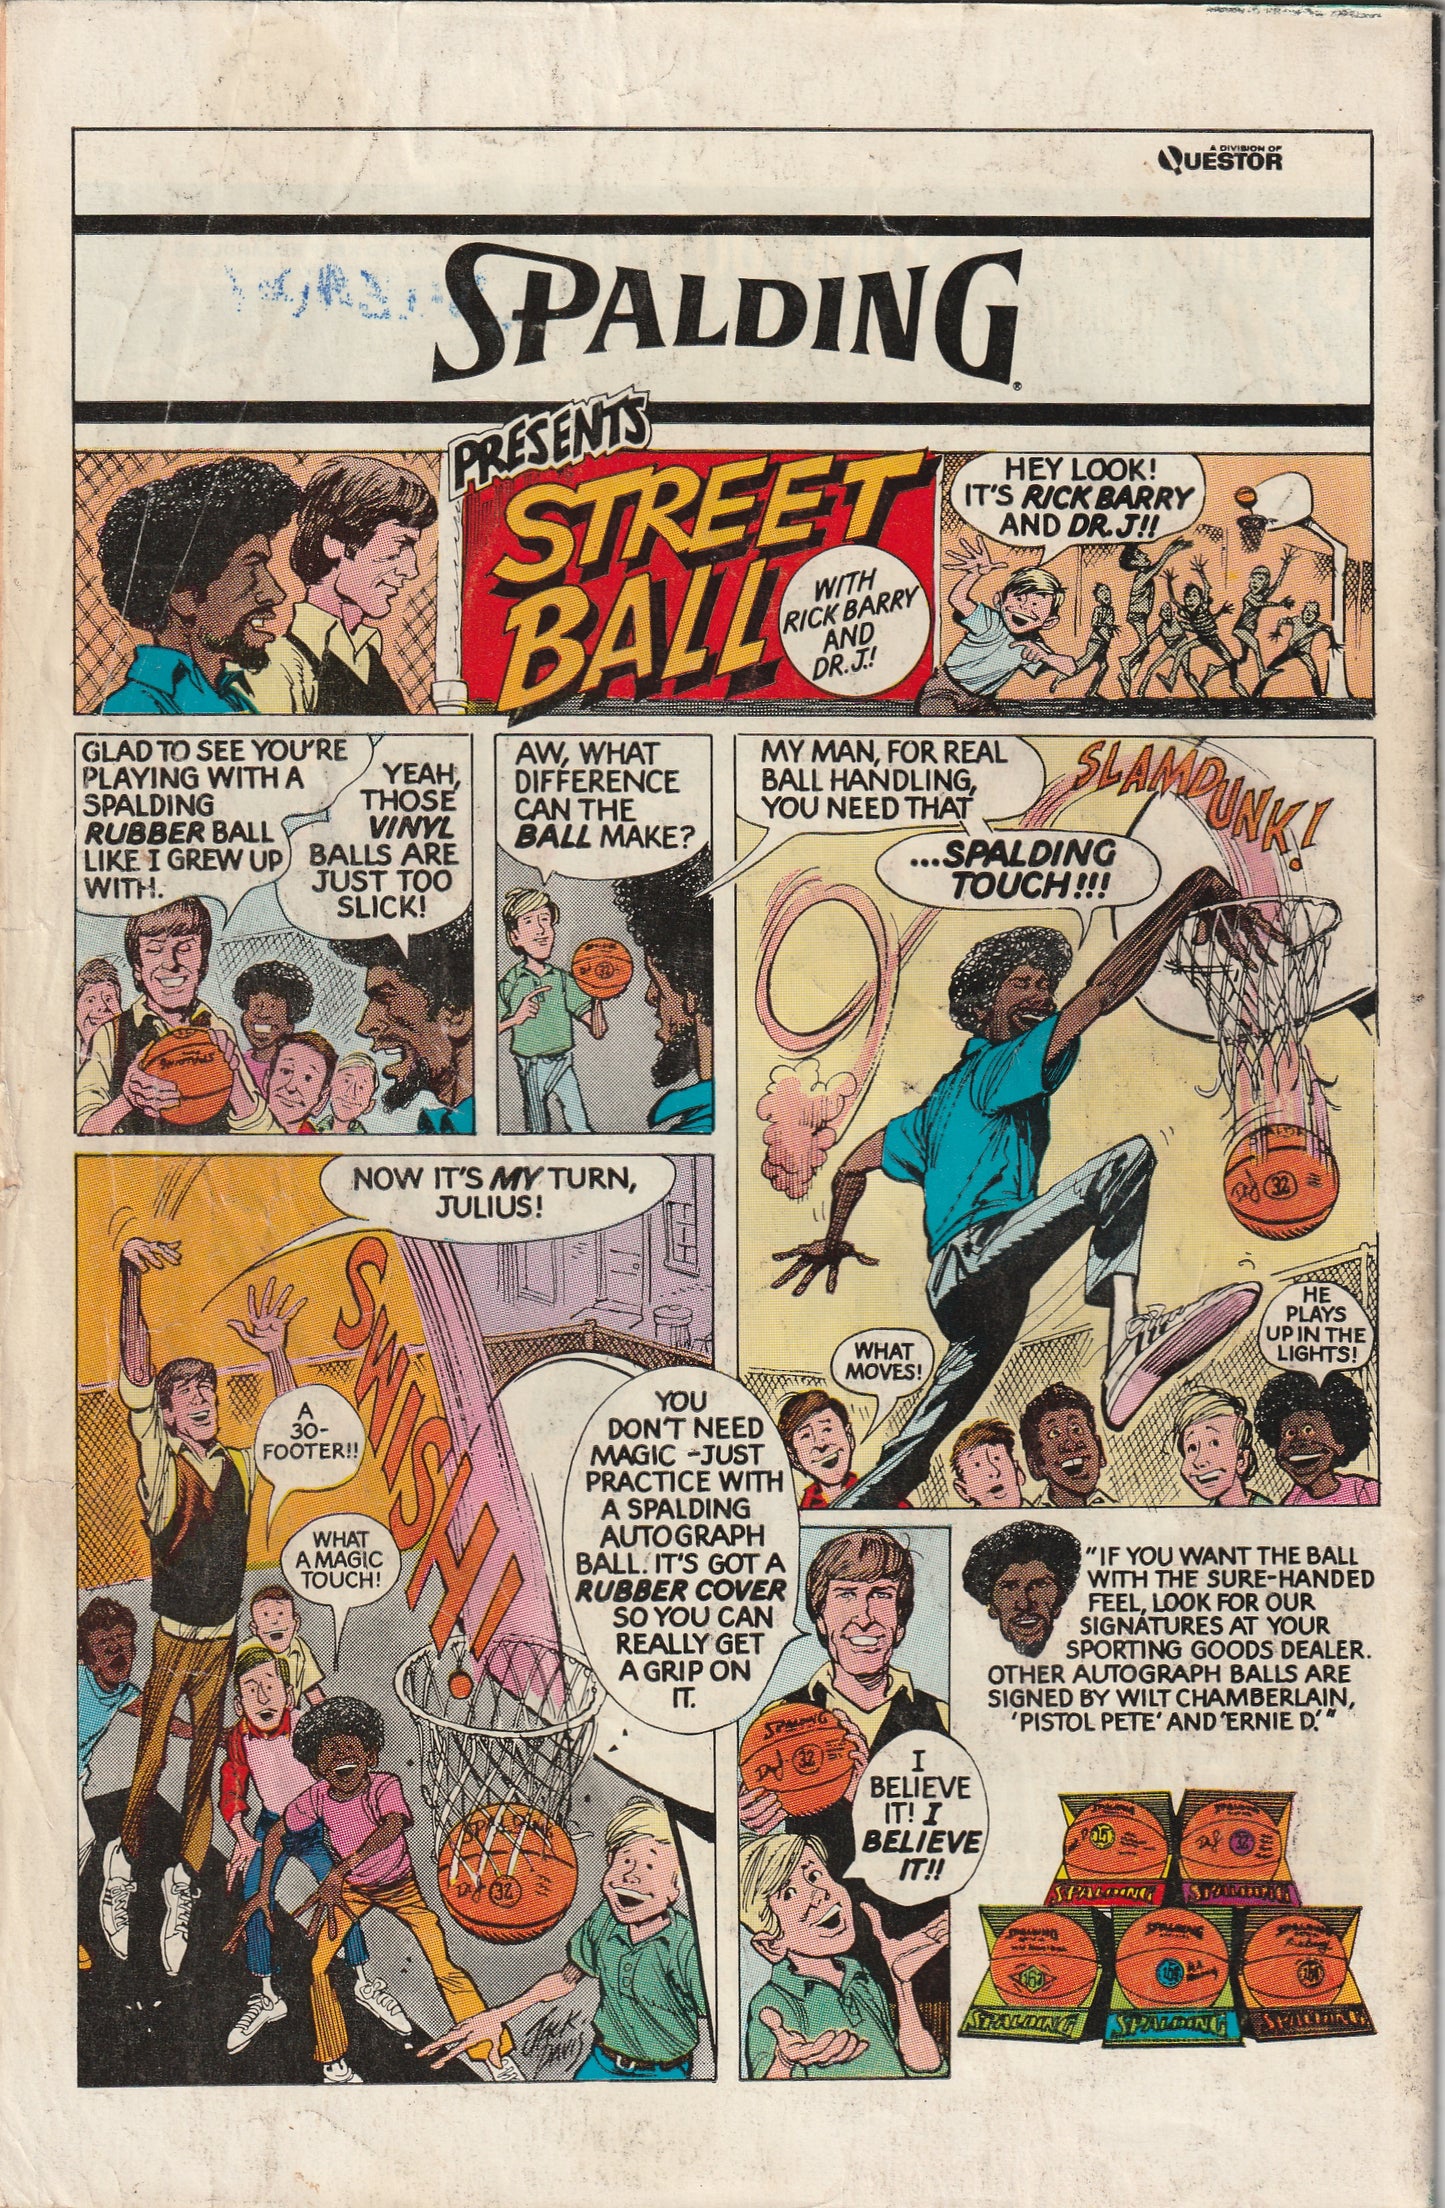 Avengers #161 (1977)